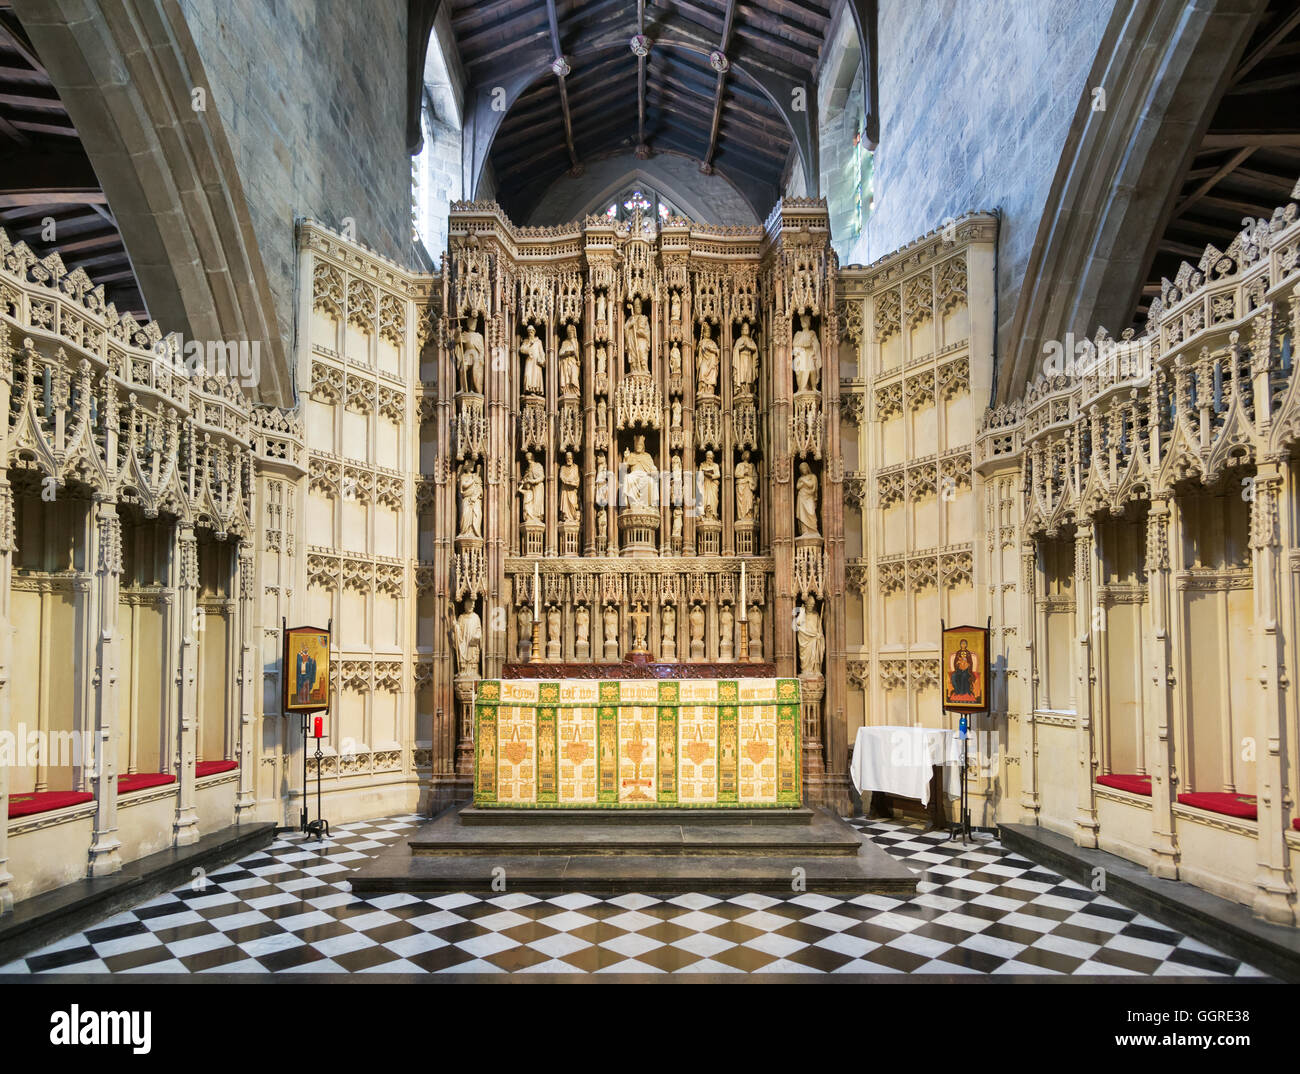 Le maître-autel retable ou écran à l'église de St Nicolas, la cathédrale de Newcastle, Angleterre du Nord-Est, Royaume-Uni Banque D'Images